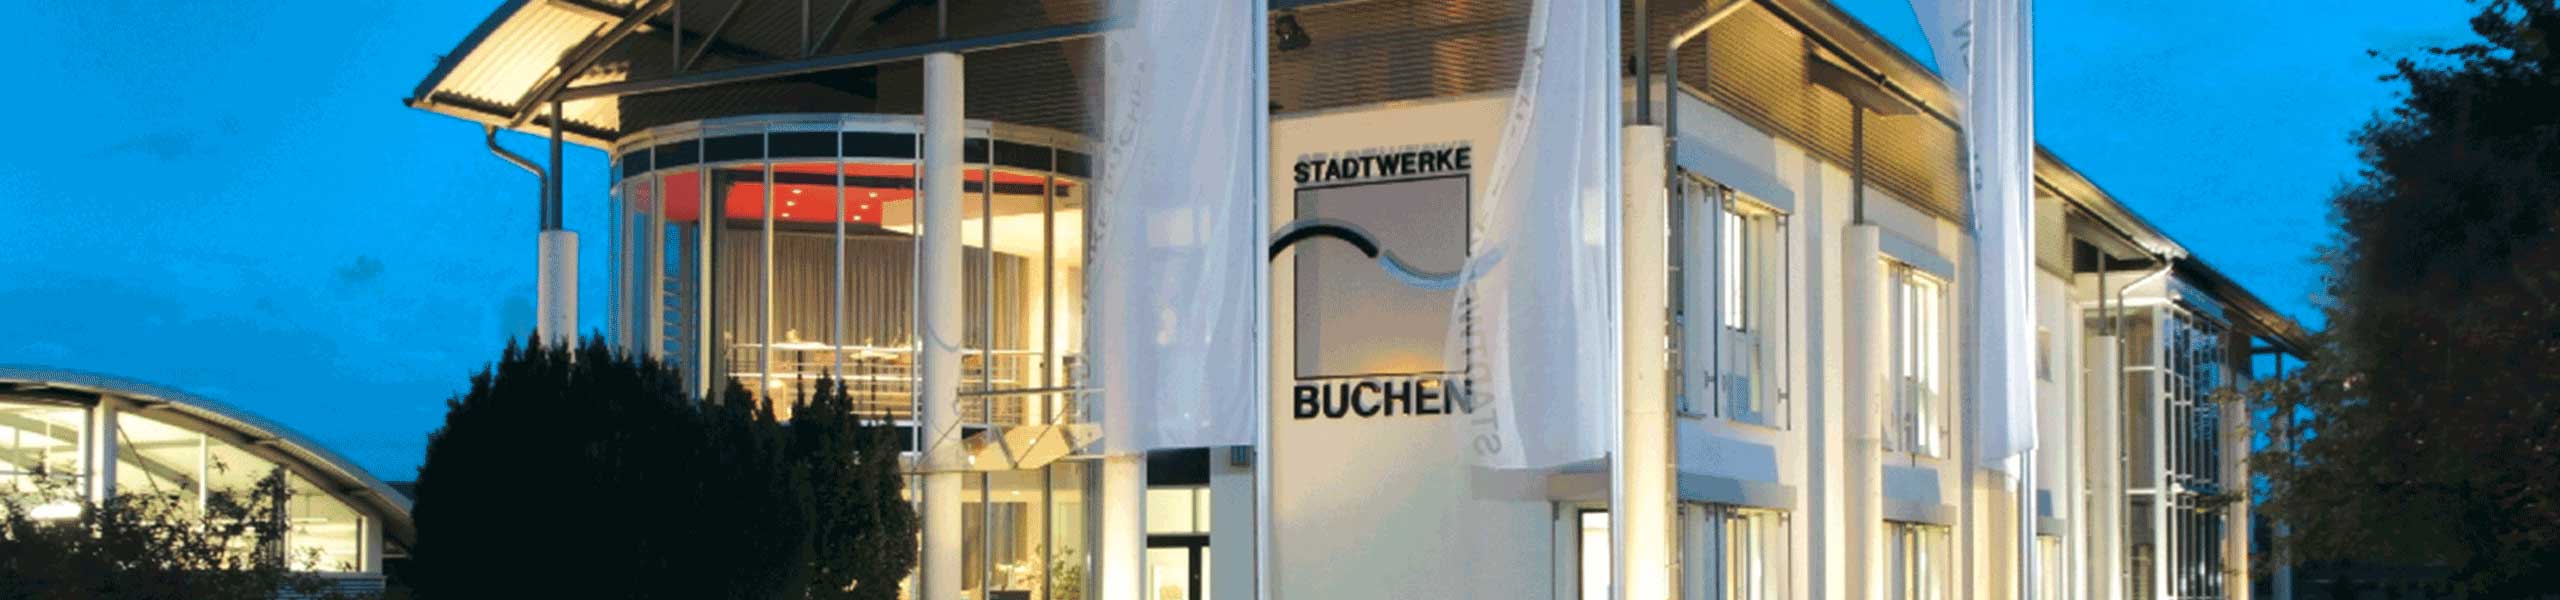 Stadtwerke Buchen GmbH & Co KG - Ihr Versorger vor Ort - swb.magazin 1/2022